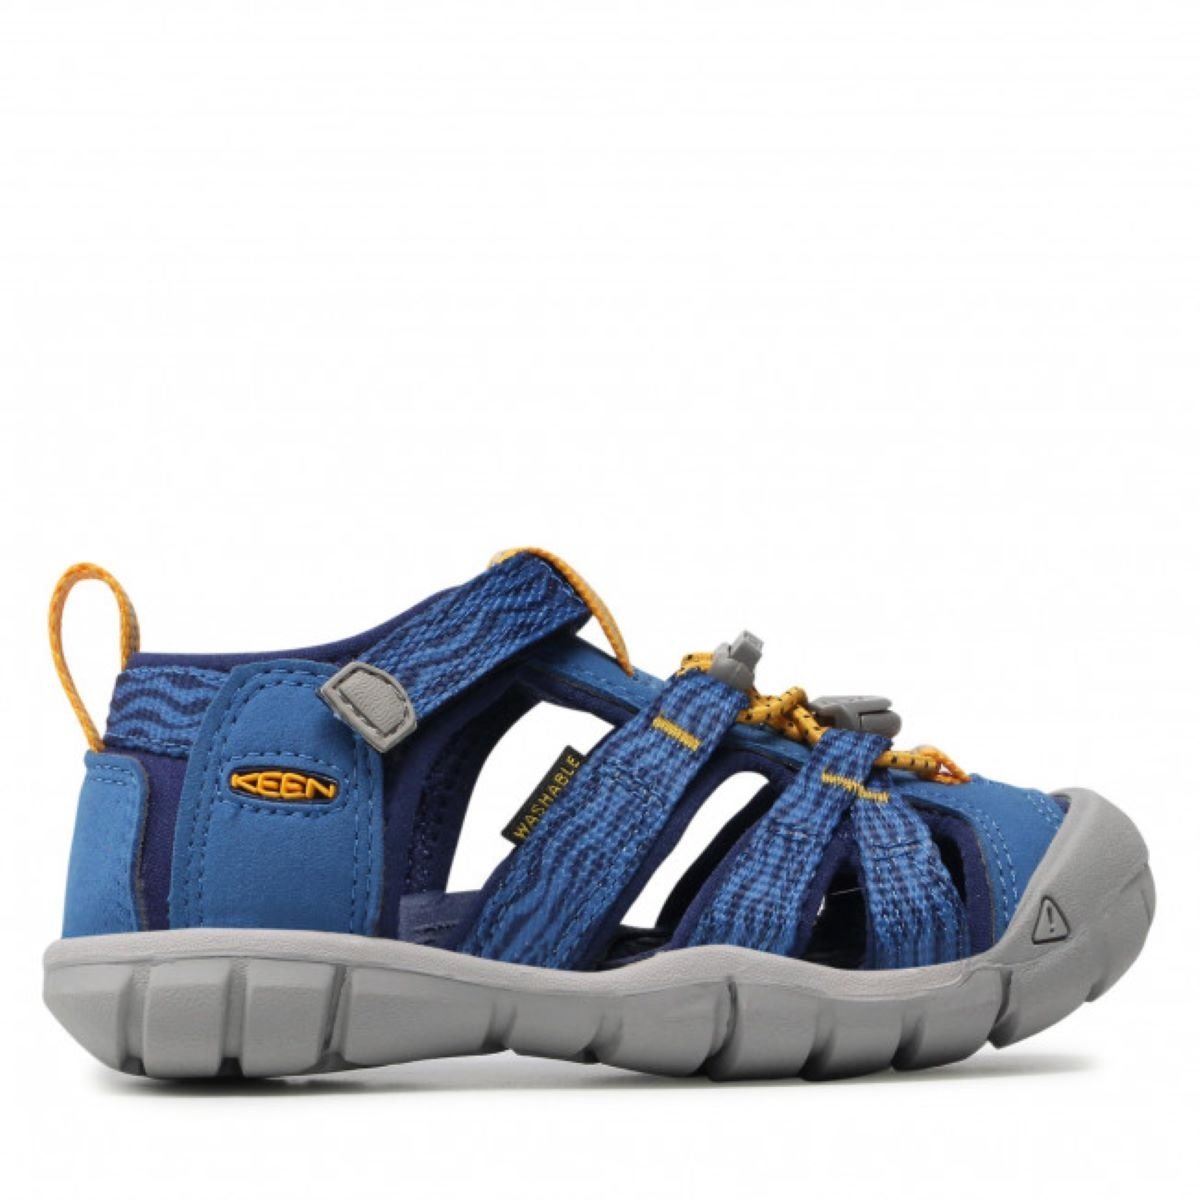 Sandále Keen SEACAMP II CNX J - modrá/oranžová